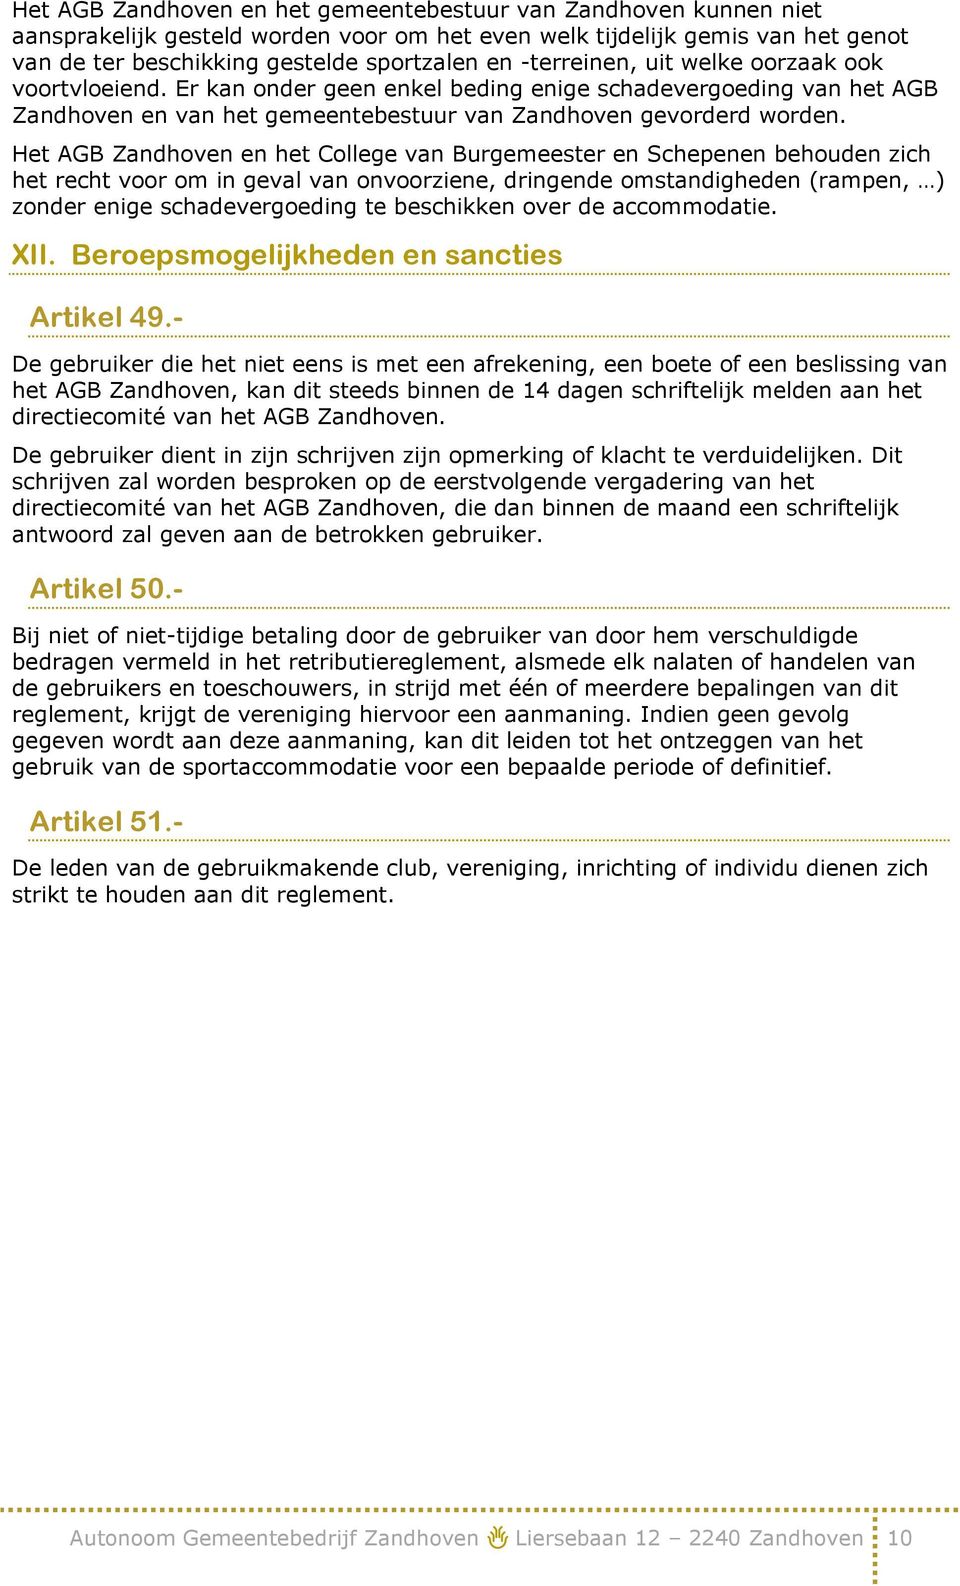 Het AGB Zandhoven en het College van Burgemeester en Schepenen behouden zich het recht voor om in geval van onvoorziene, dringende omstandigheden (rampen, ) zonder enige schadevergoeding te